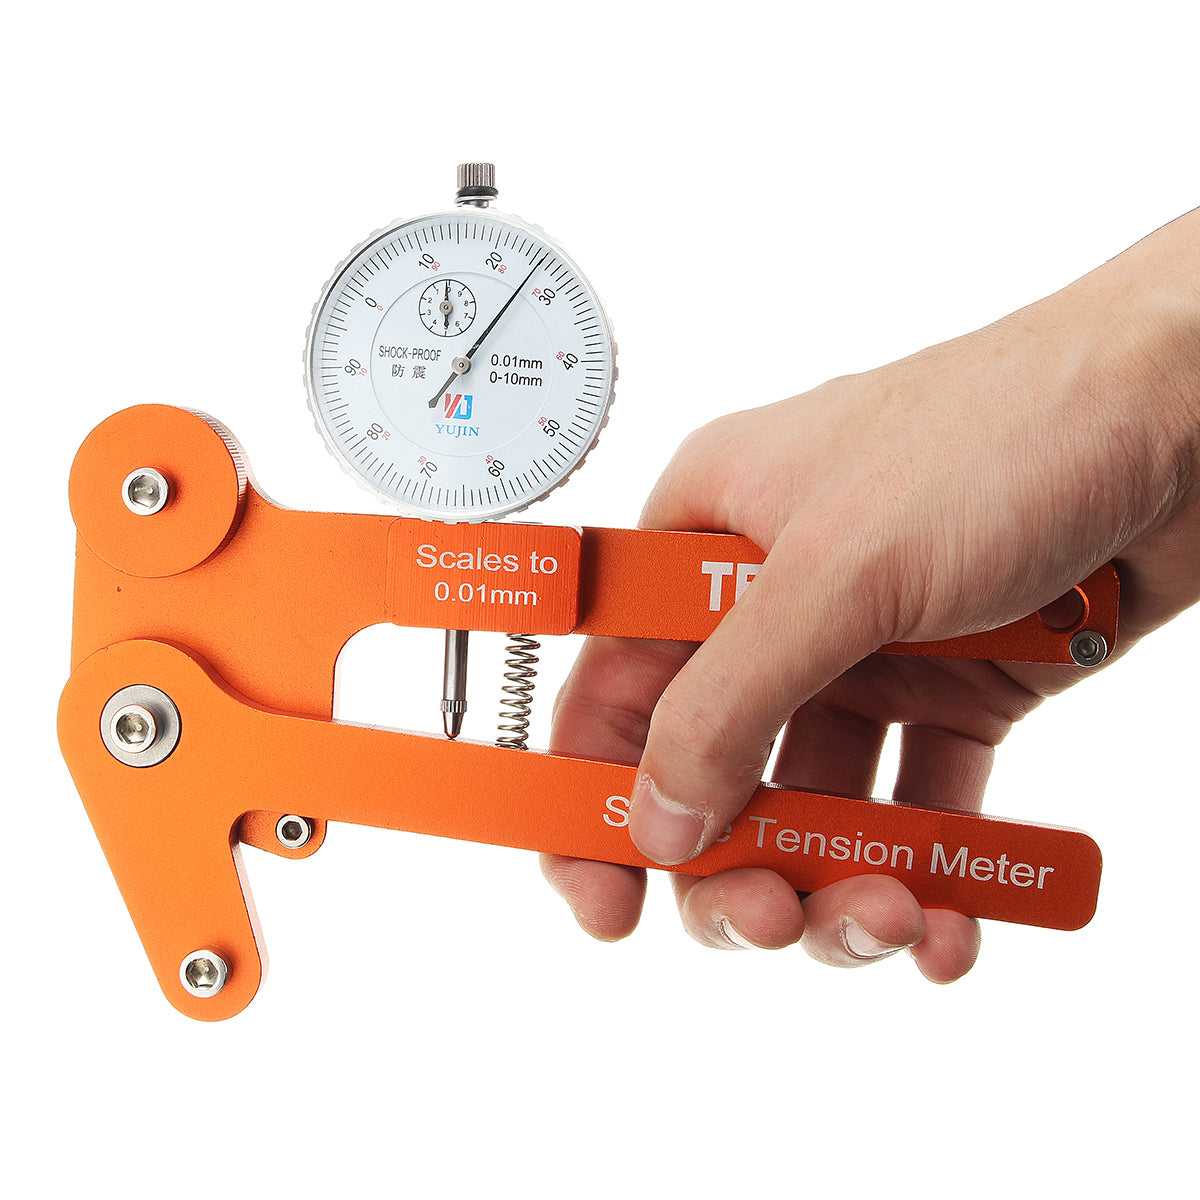 BIKIGHT Spoke Tension Meter Tensiometer Bicycle Wheel Builders Tool Digital Scale